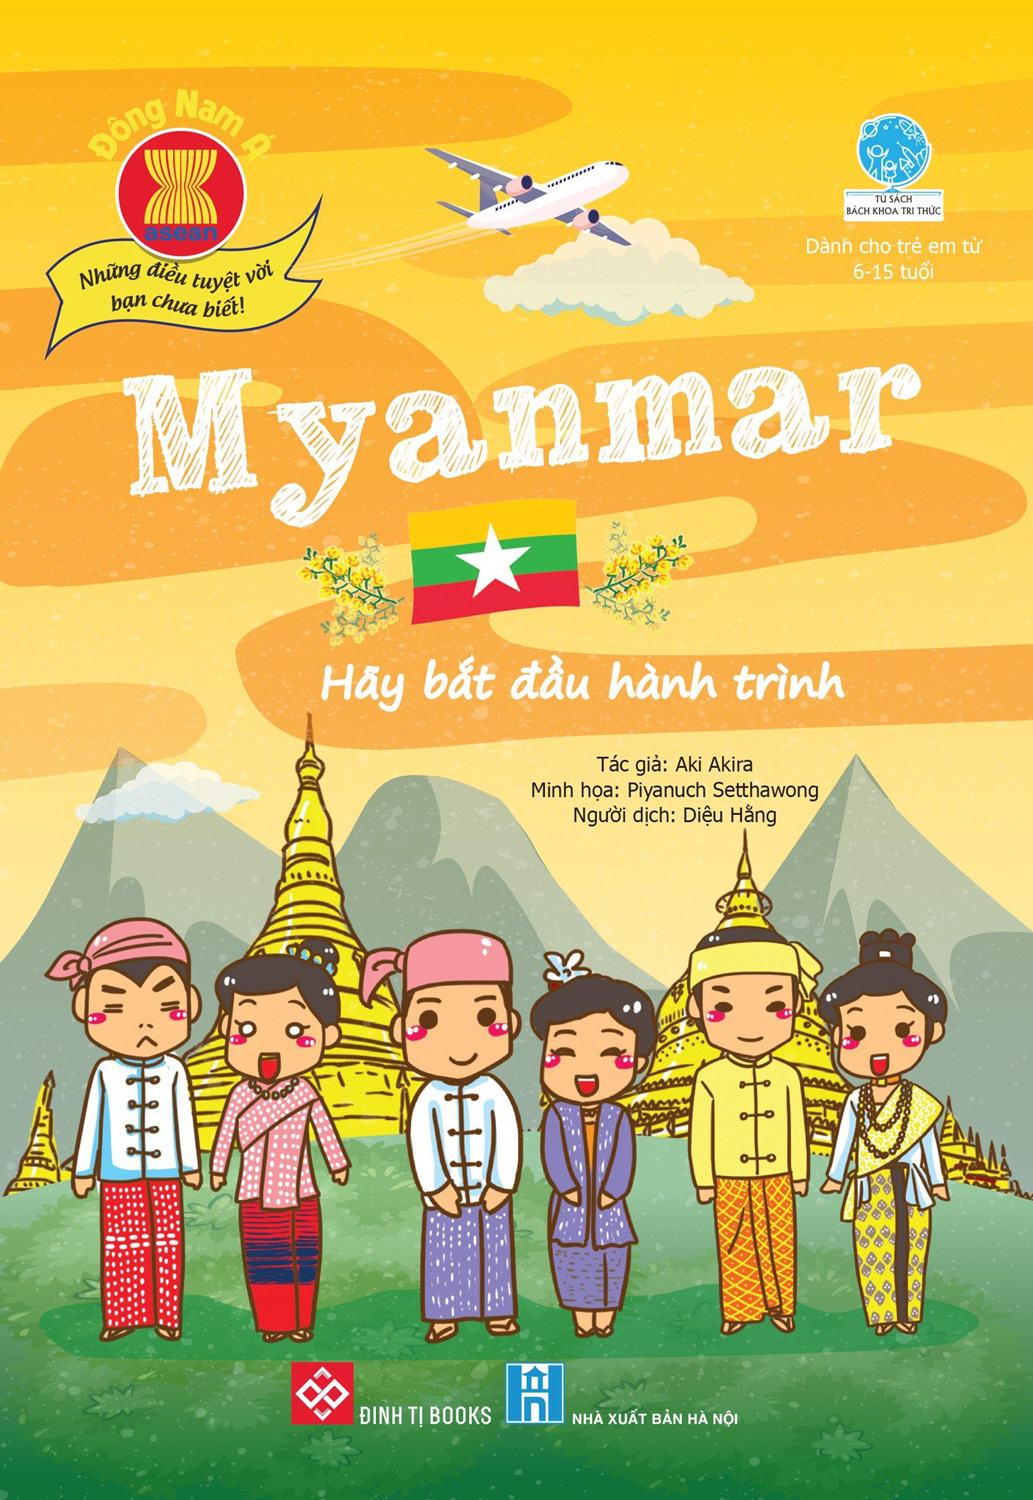 Đông Nam Á - Những Điều Tuyệt Vời Bạn Chưa Biết: Myanmar - Hãy Bắt Đầu Hành Trình